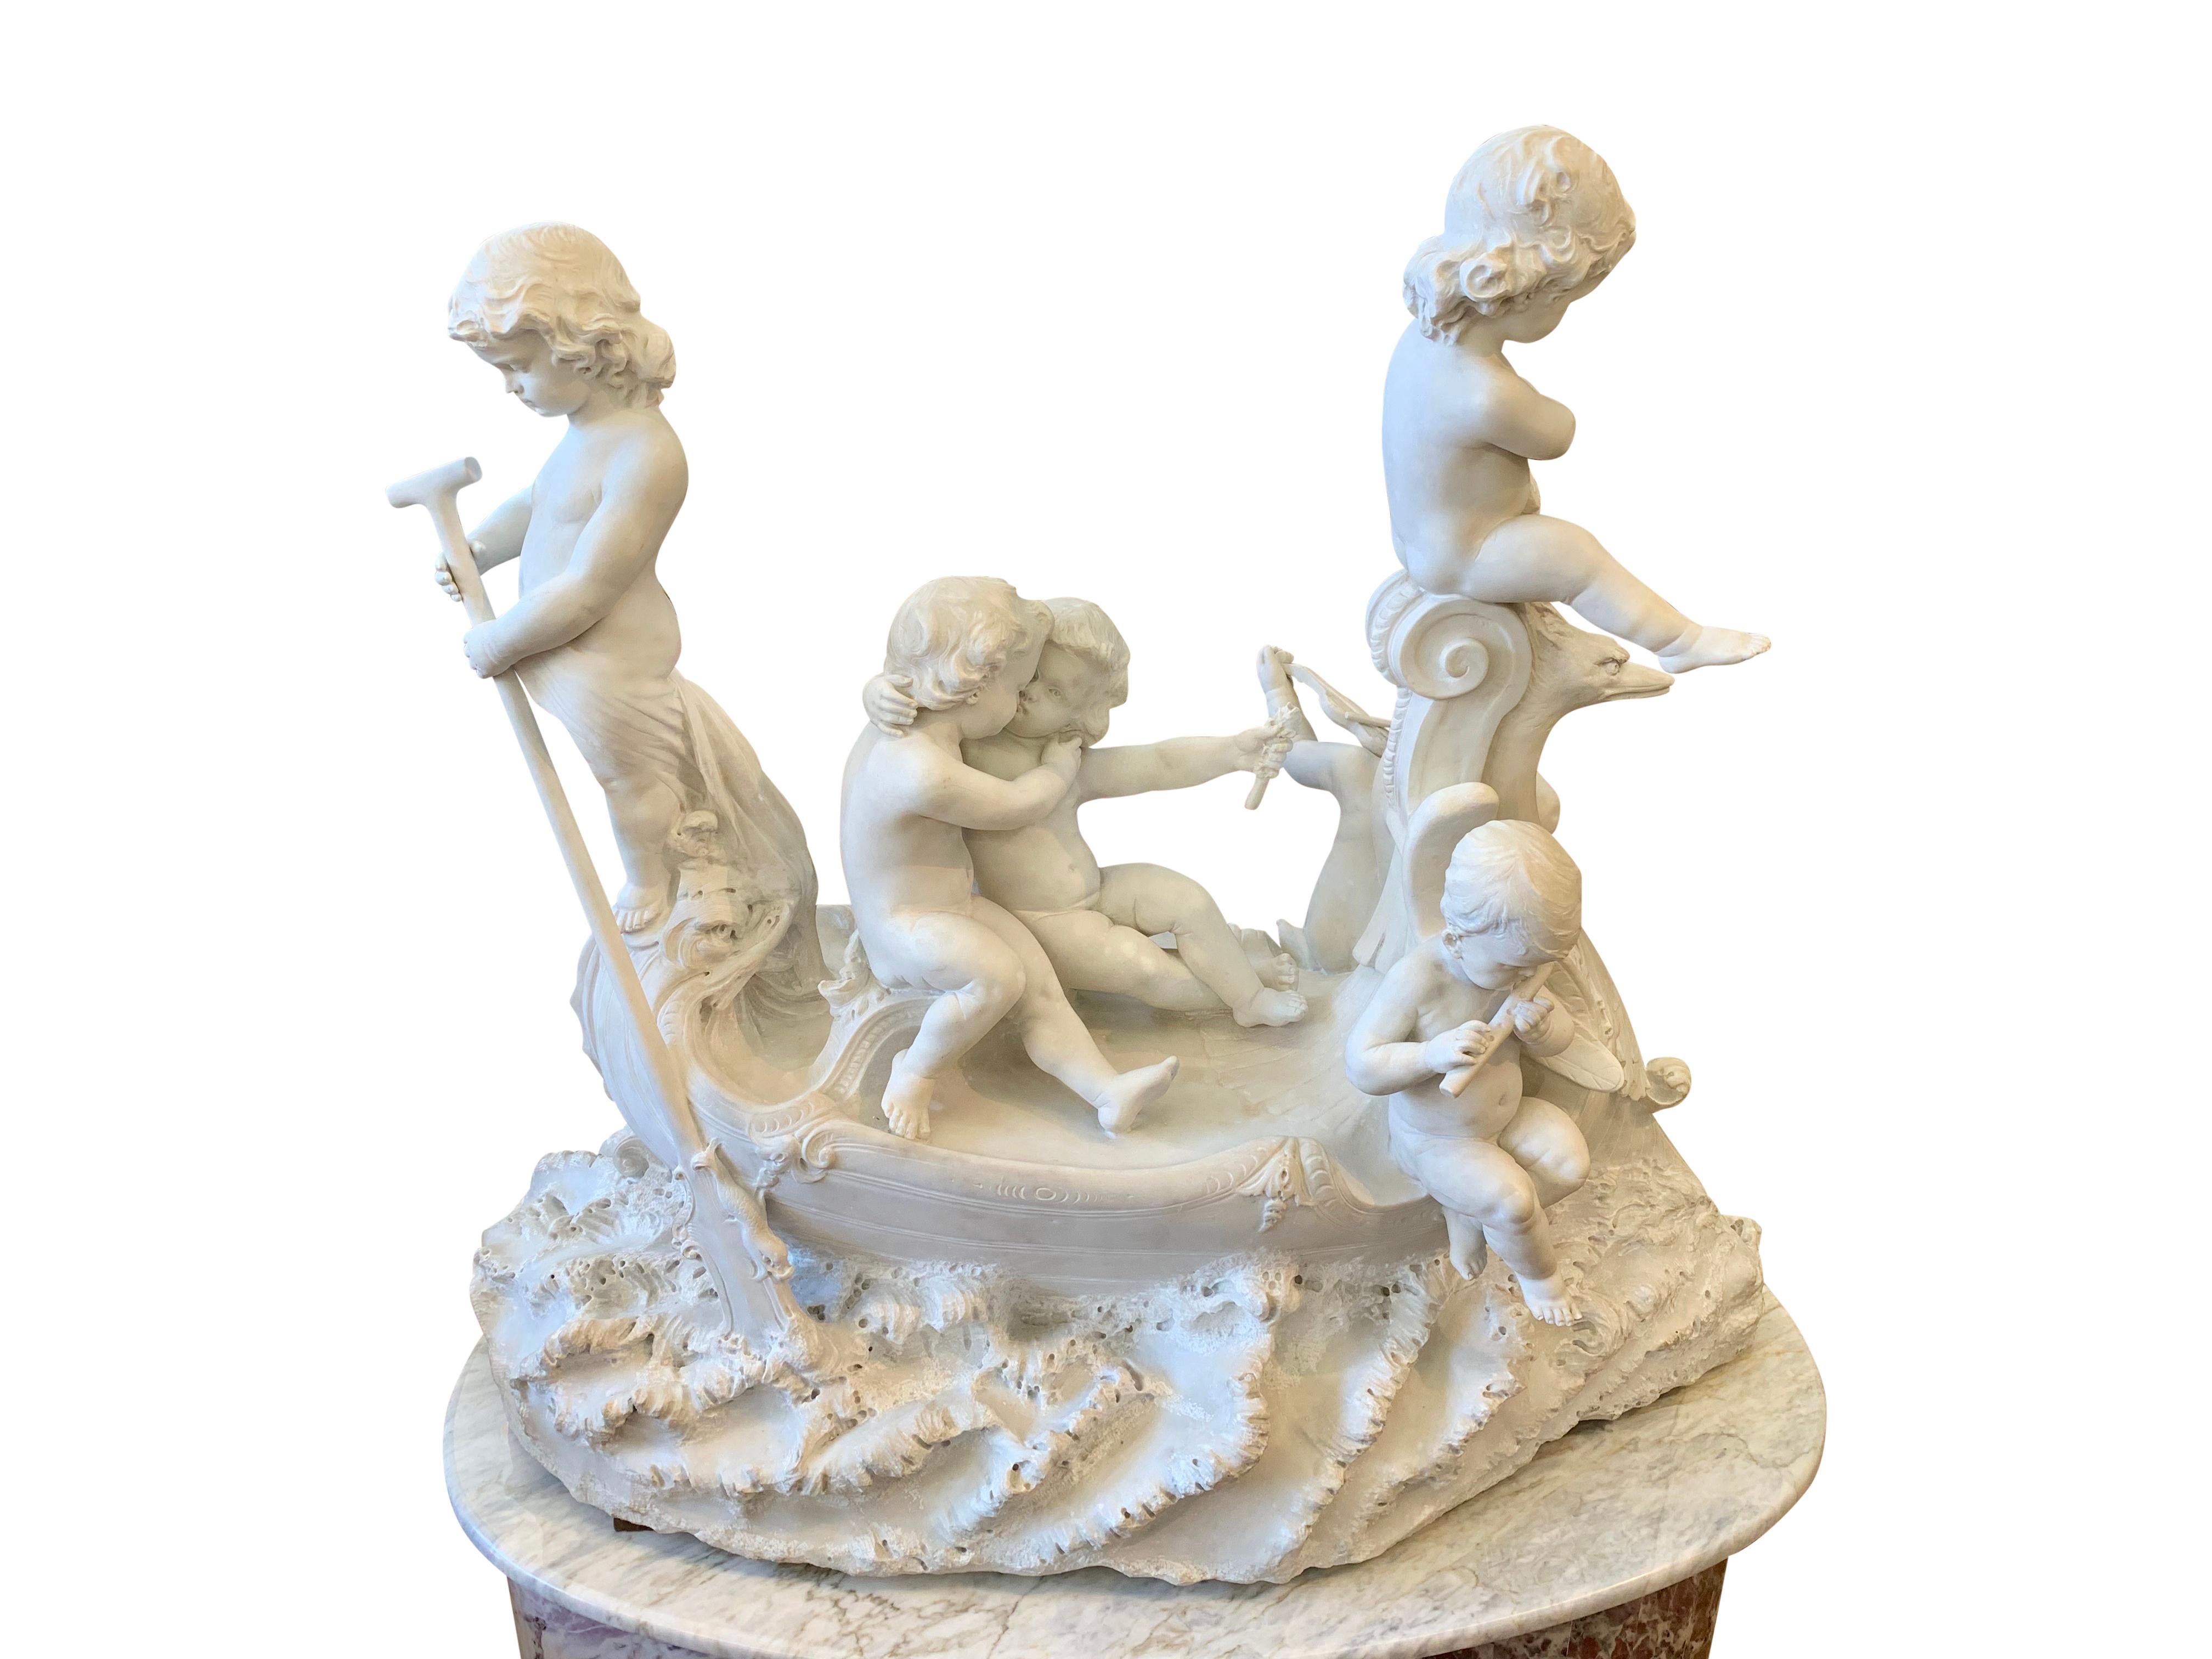 Ce charmant groupe en marbre blanc de Carrare sculpté en Italie au XIXe siècle représente six enfants dans un bateau. Trois enfants jouent d'instruments de musique (violon, flûte et harpe d'ange), un chérubin rame le bateau en forme de cygne, et